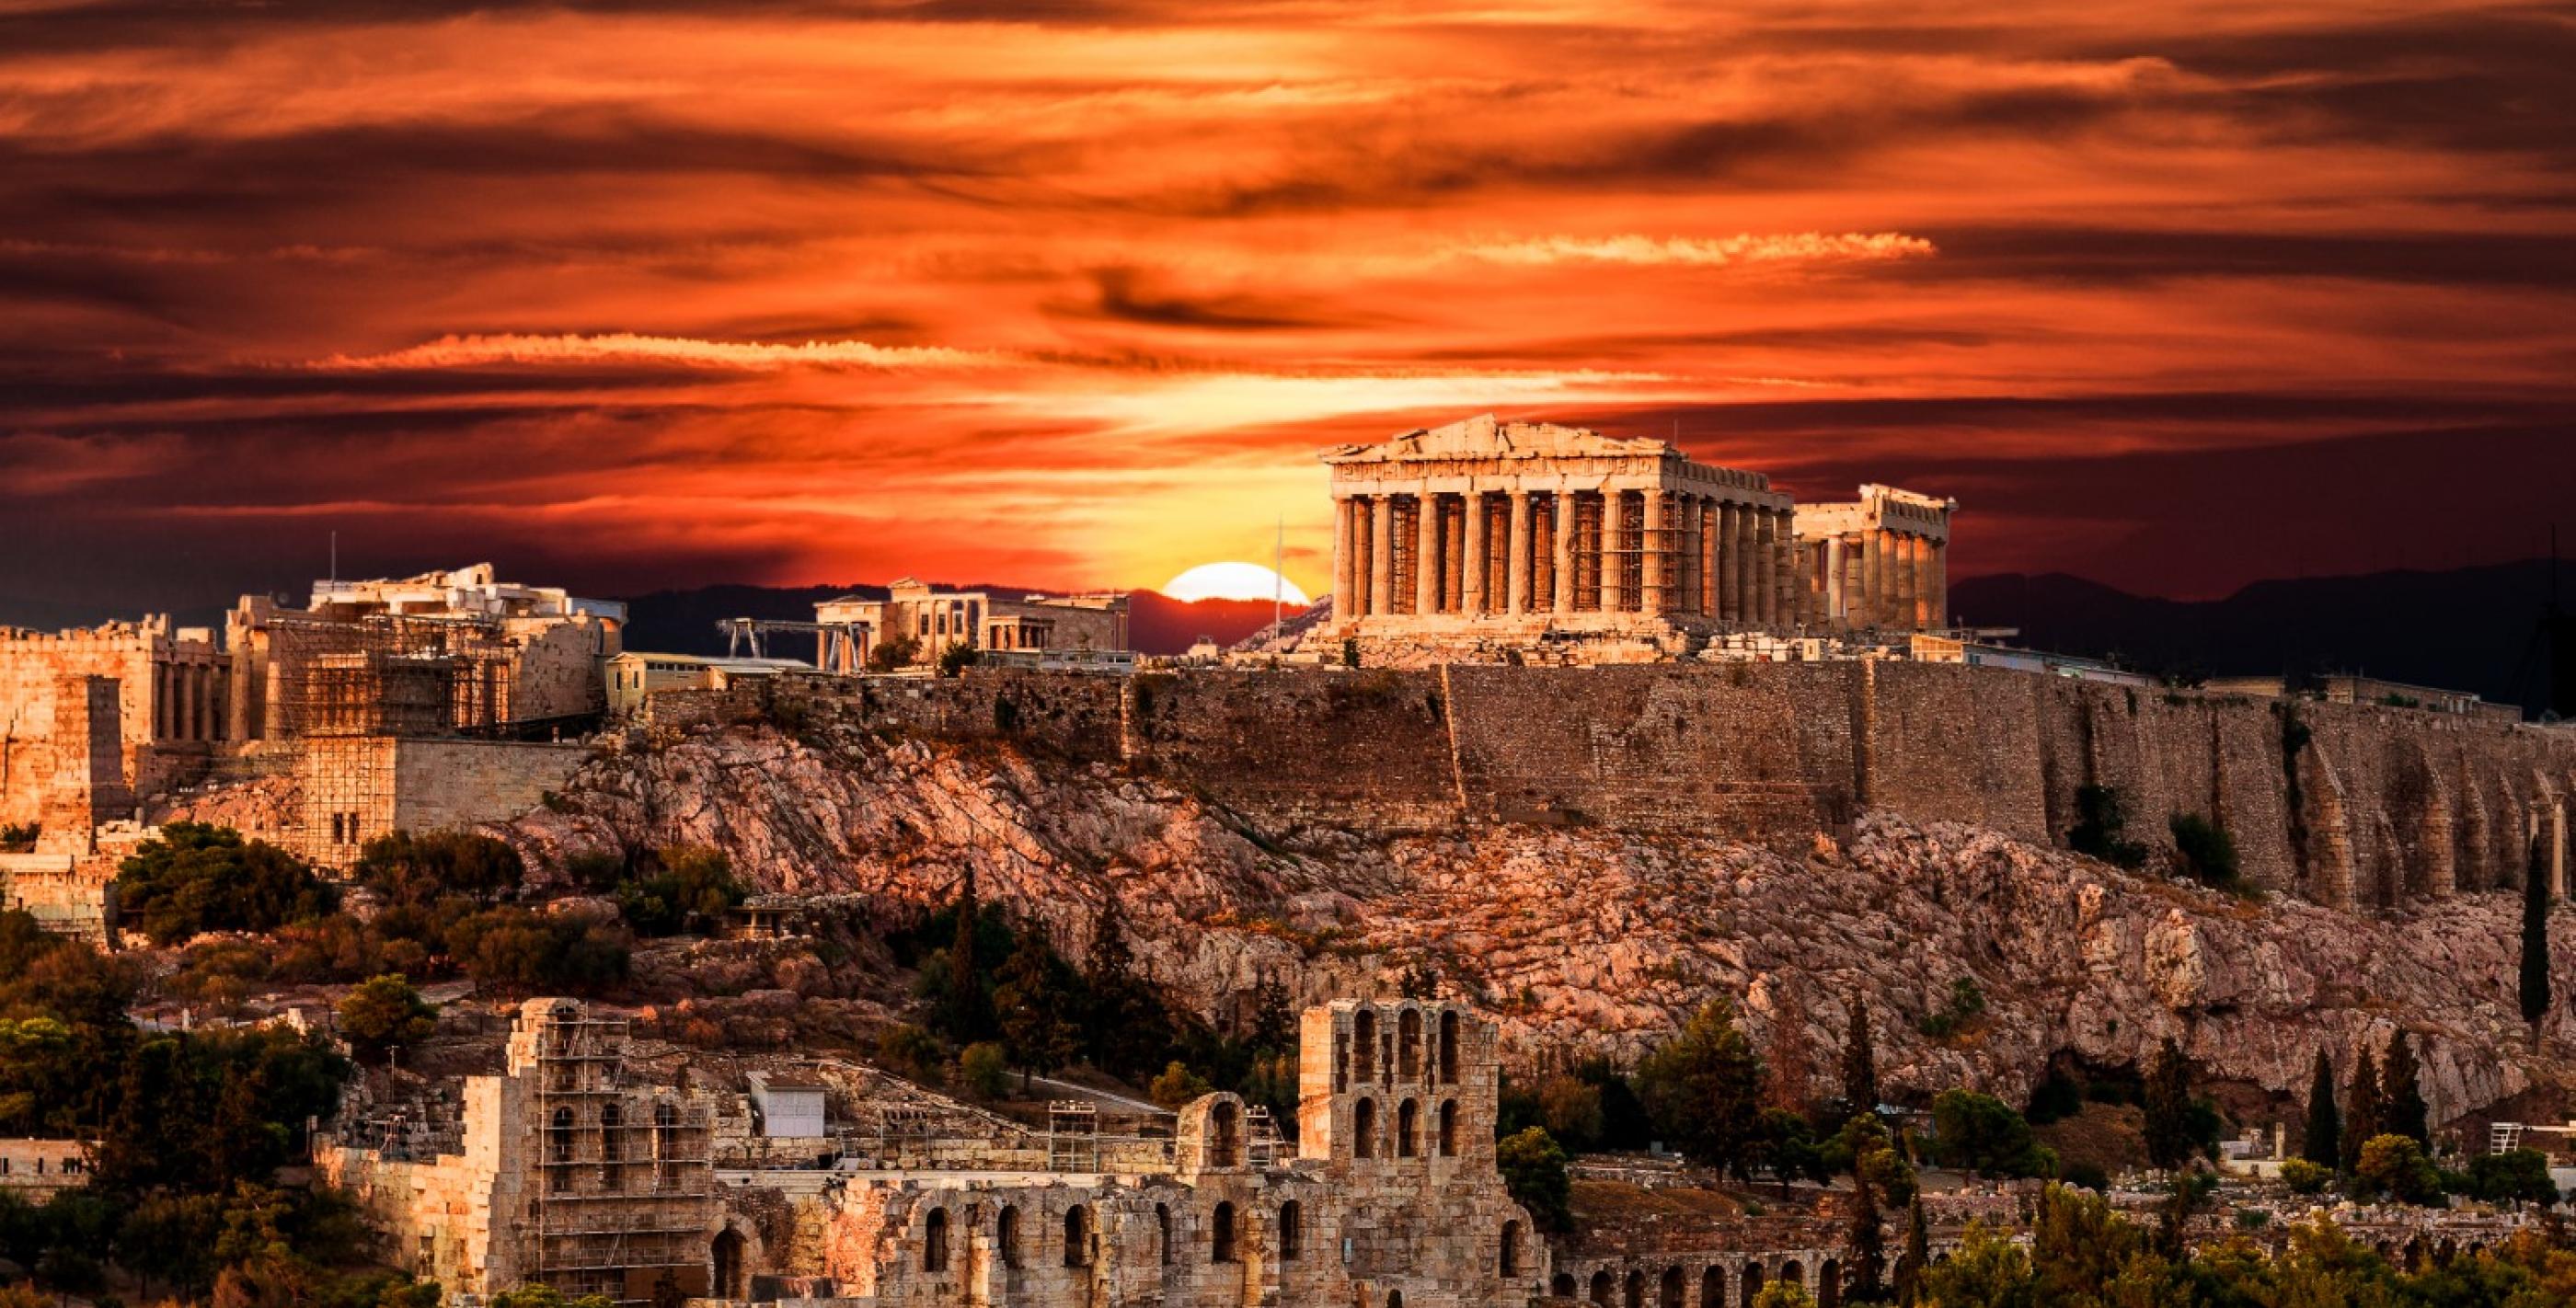 Parthenon - Acropolis of Athens